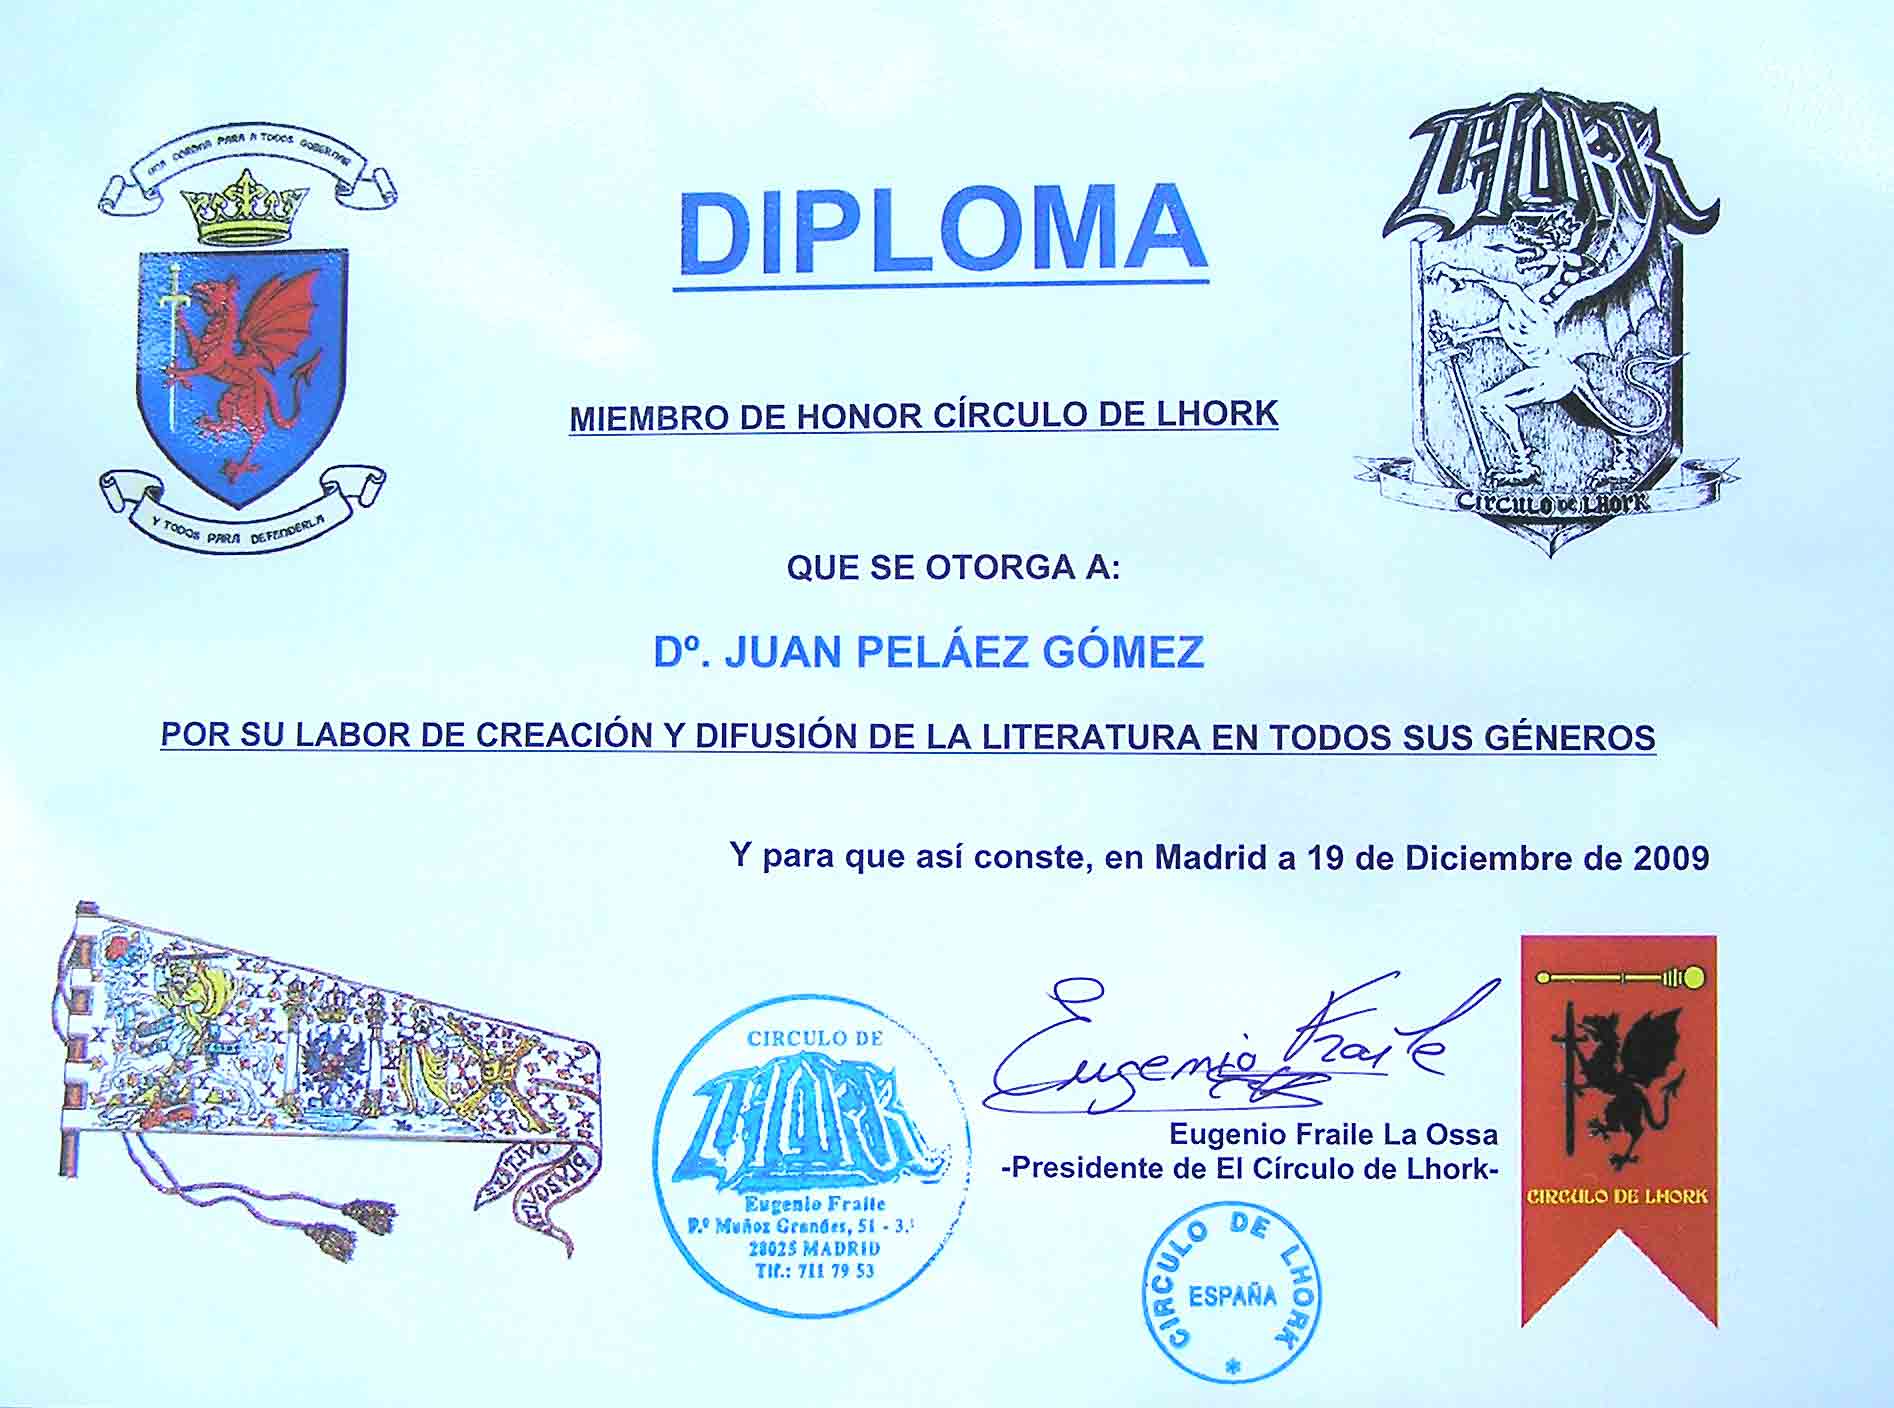  ... diploma que acreditaba al escritor Juan Peláez como miembro de honor